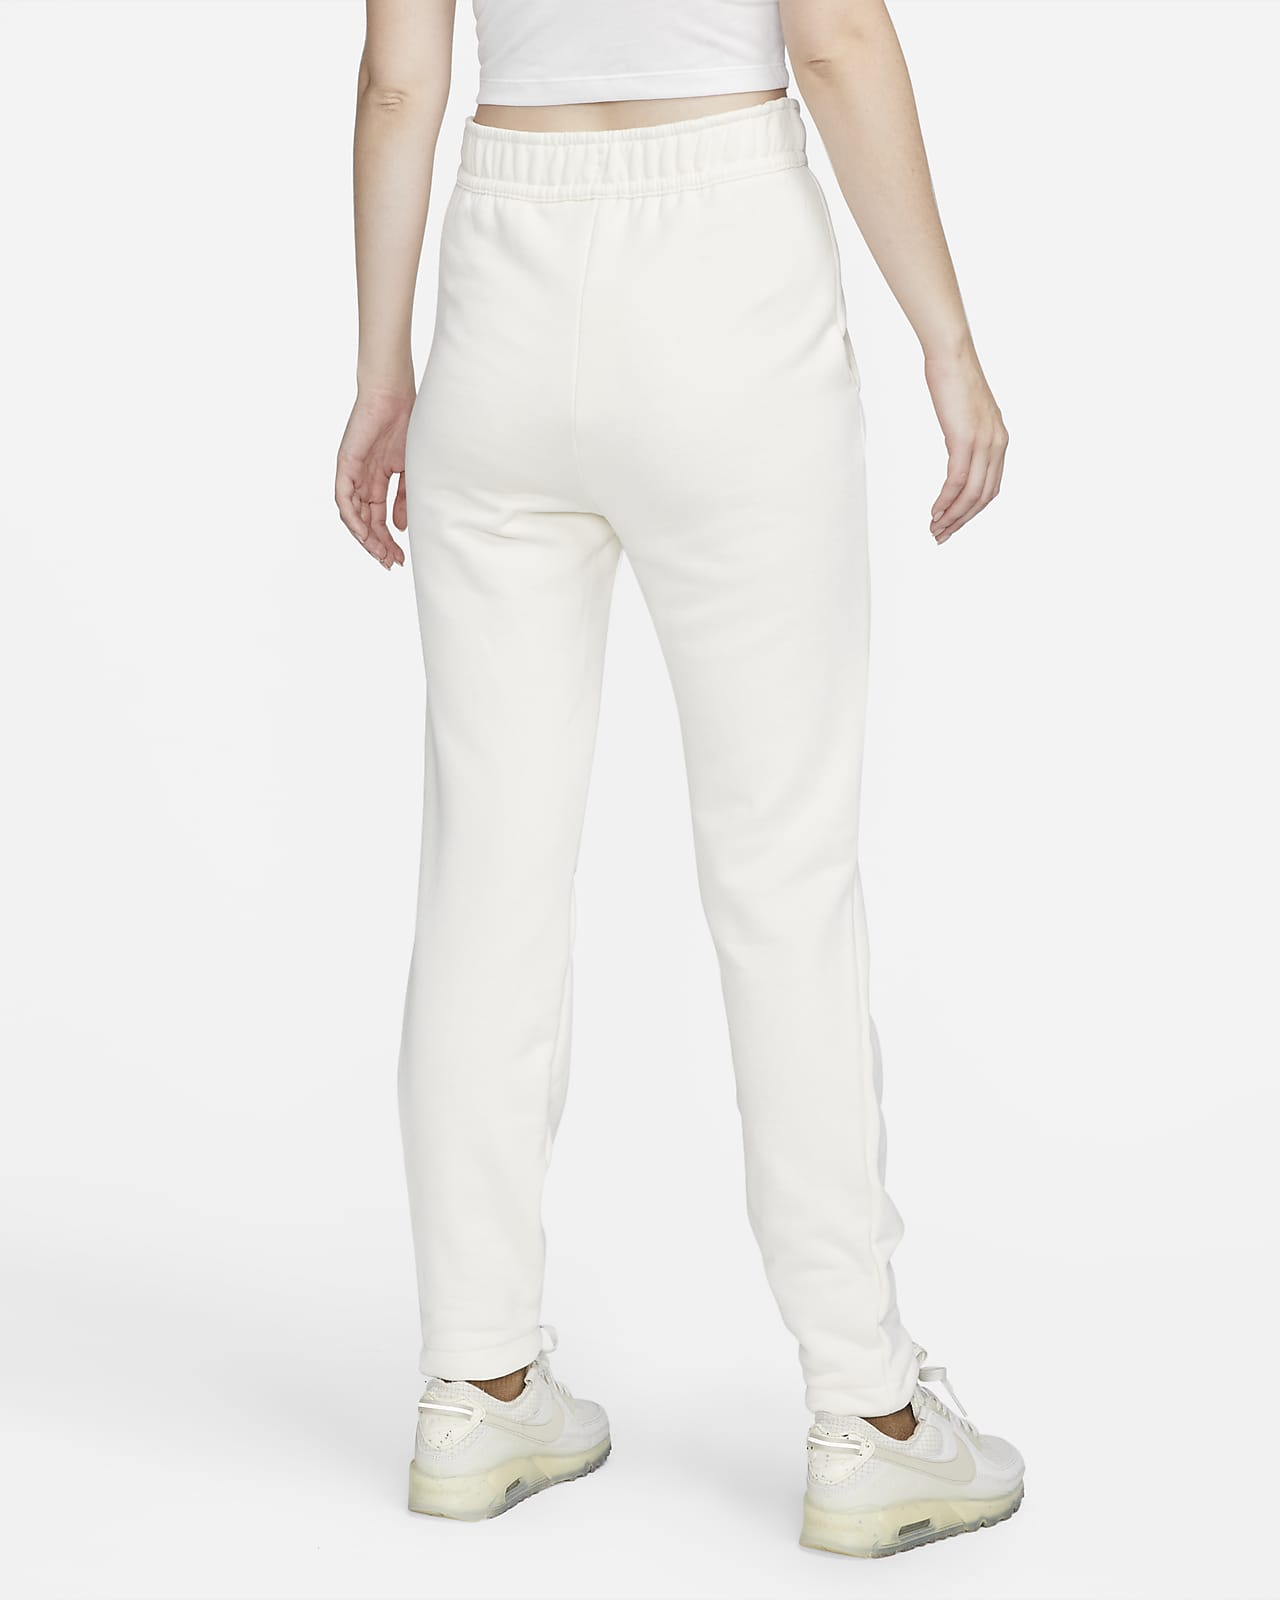 Spodnie WMNS Nike Sportswear Essential Grey Heather/White CZ8532-063